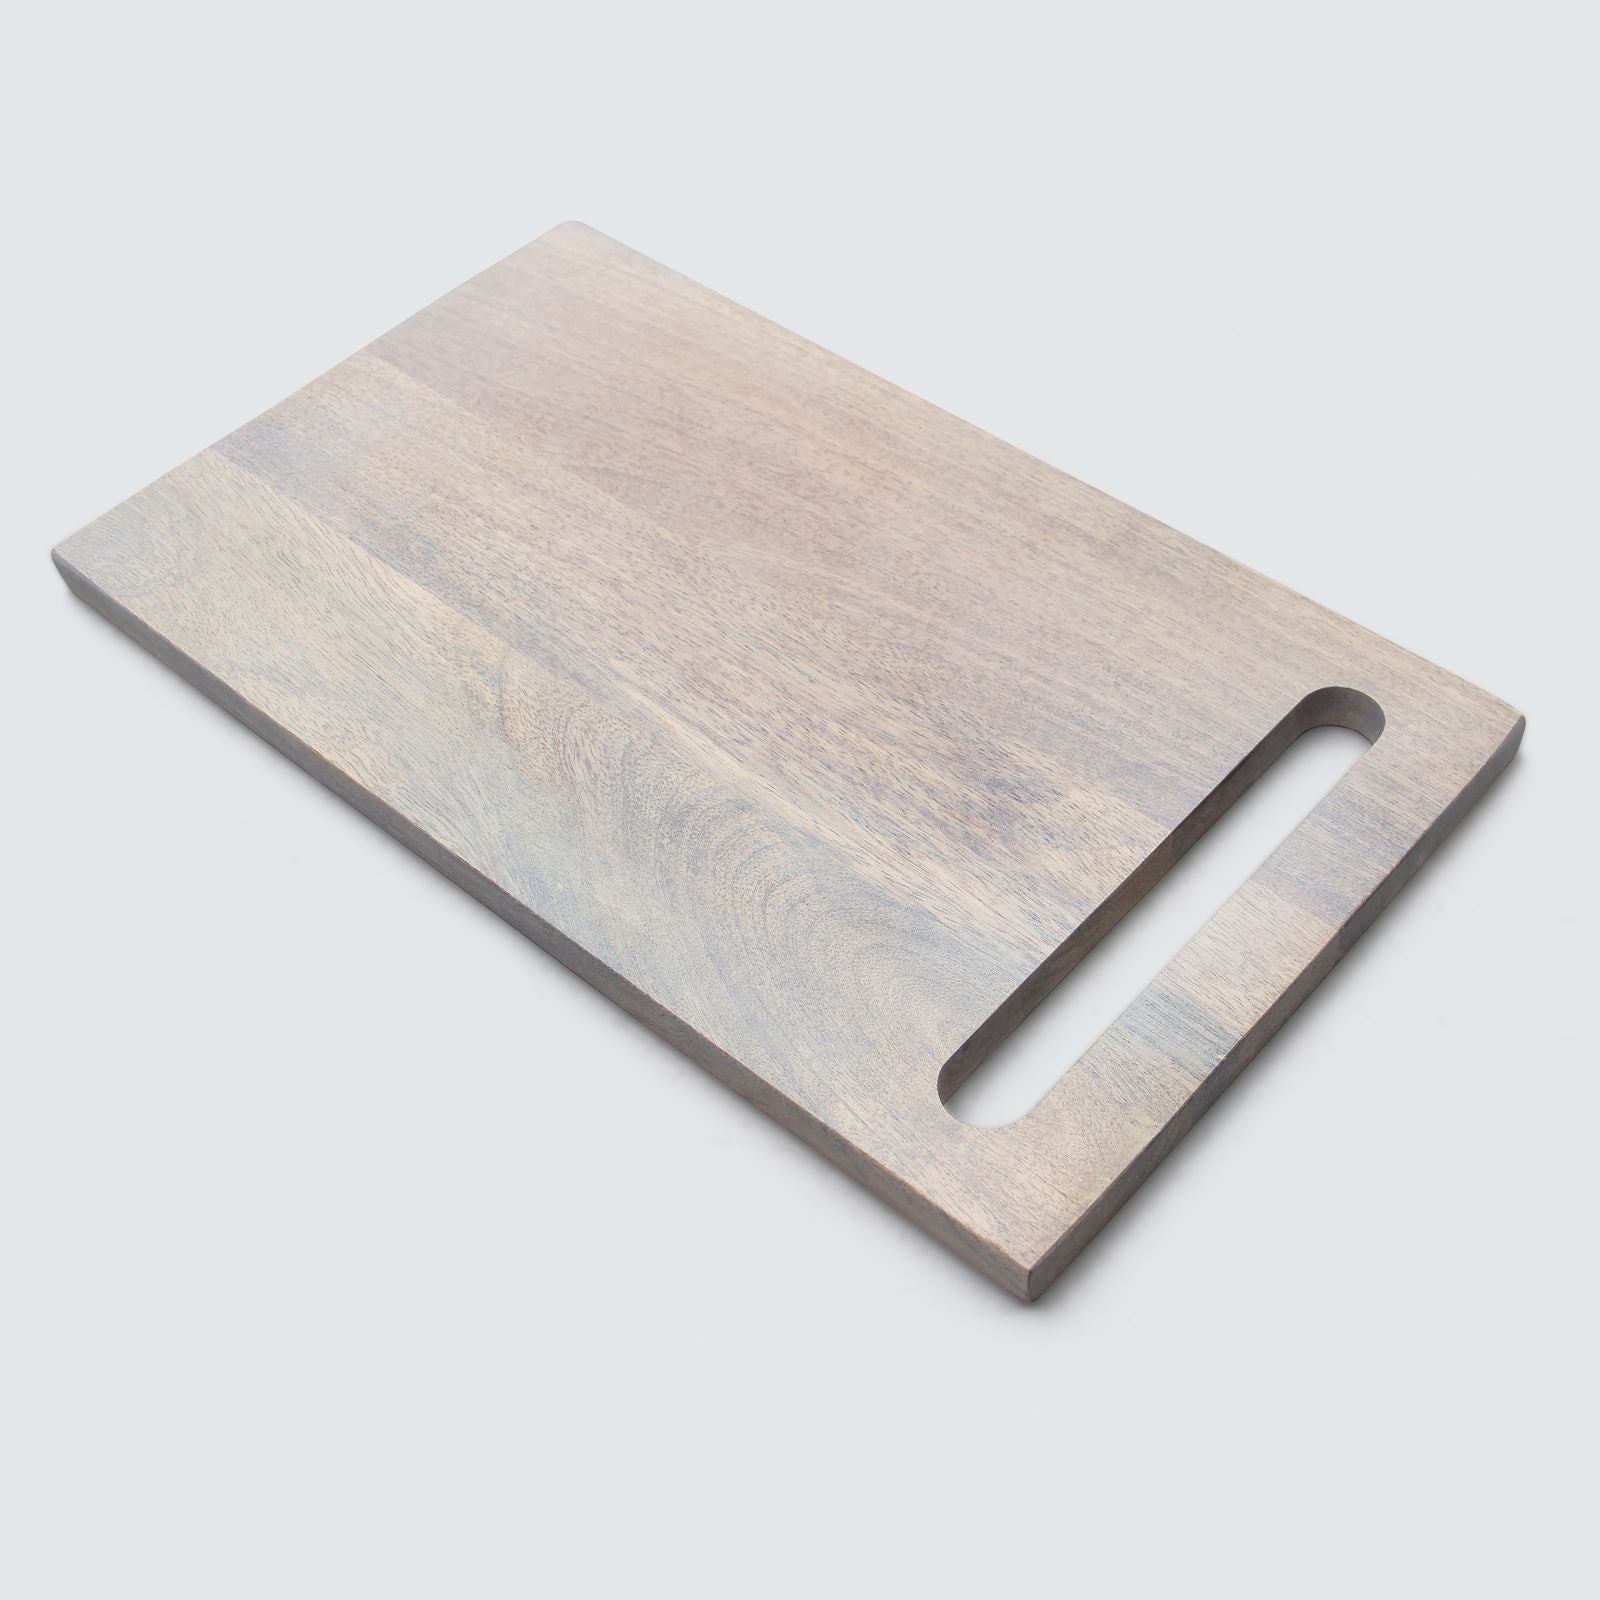 View Bzaar - Acacia Wood Cutting Board